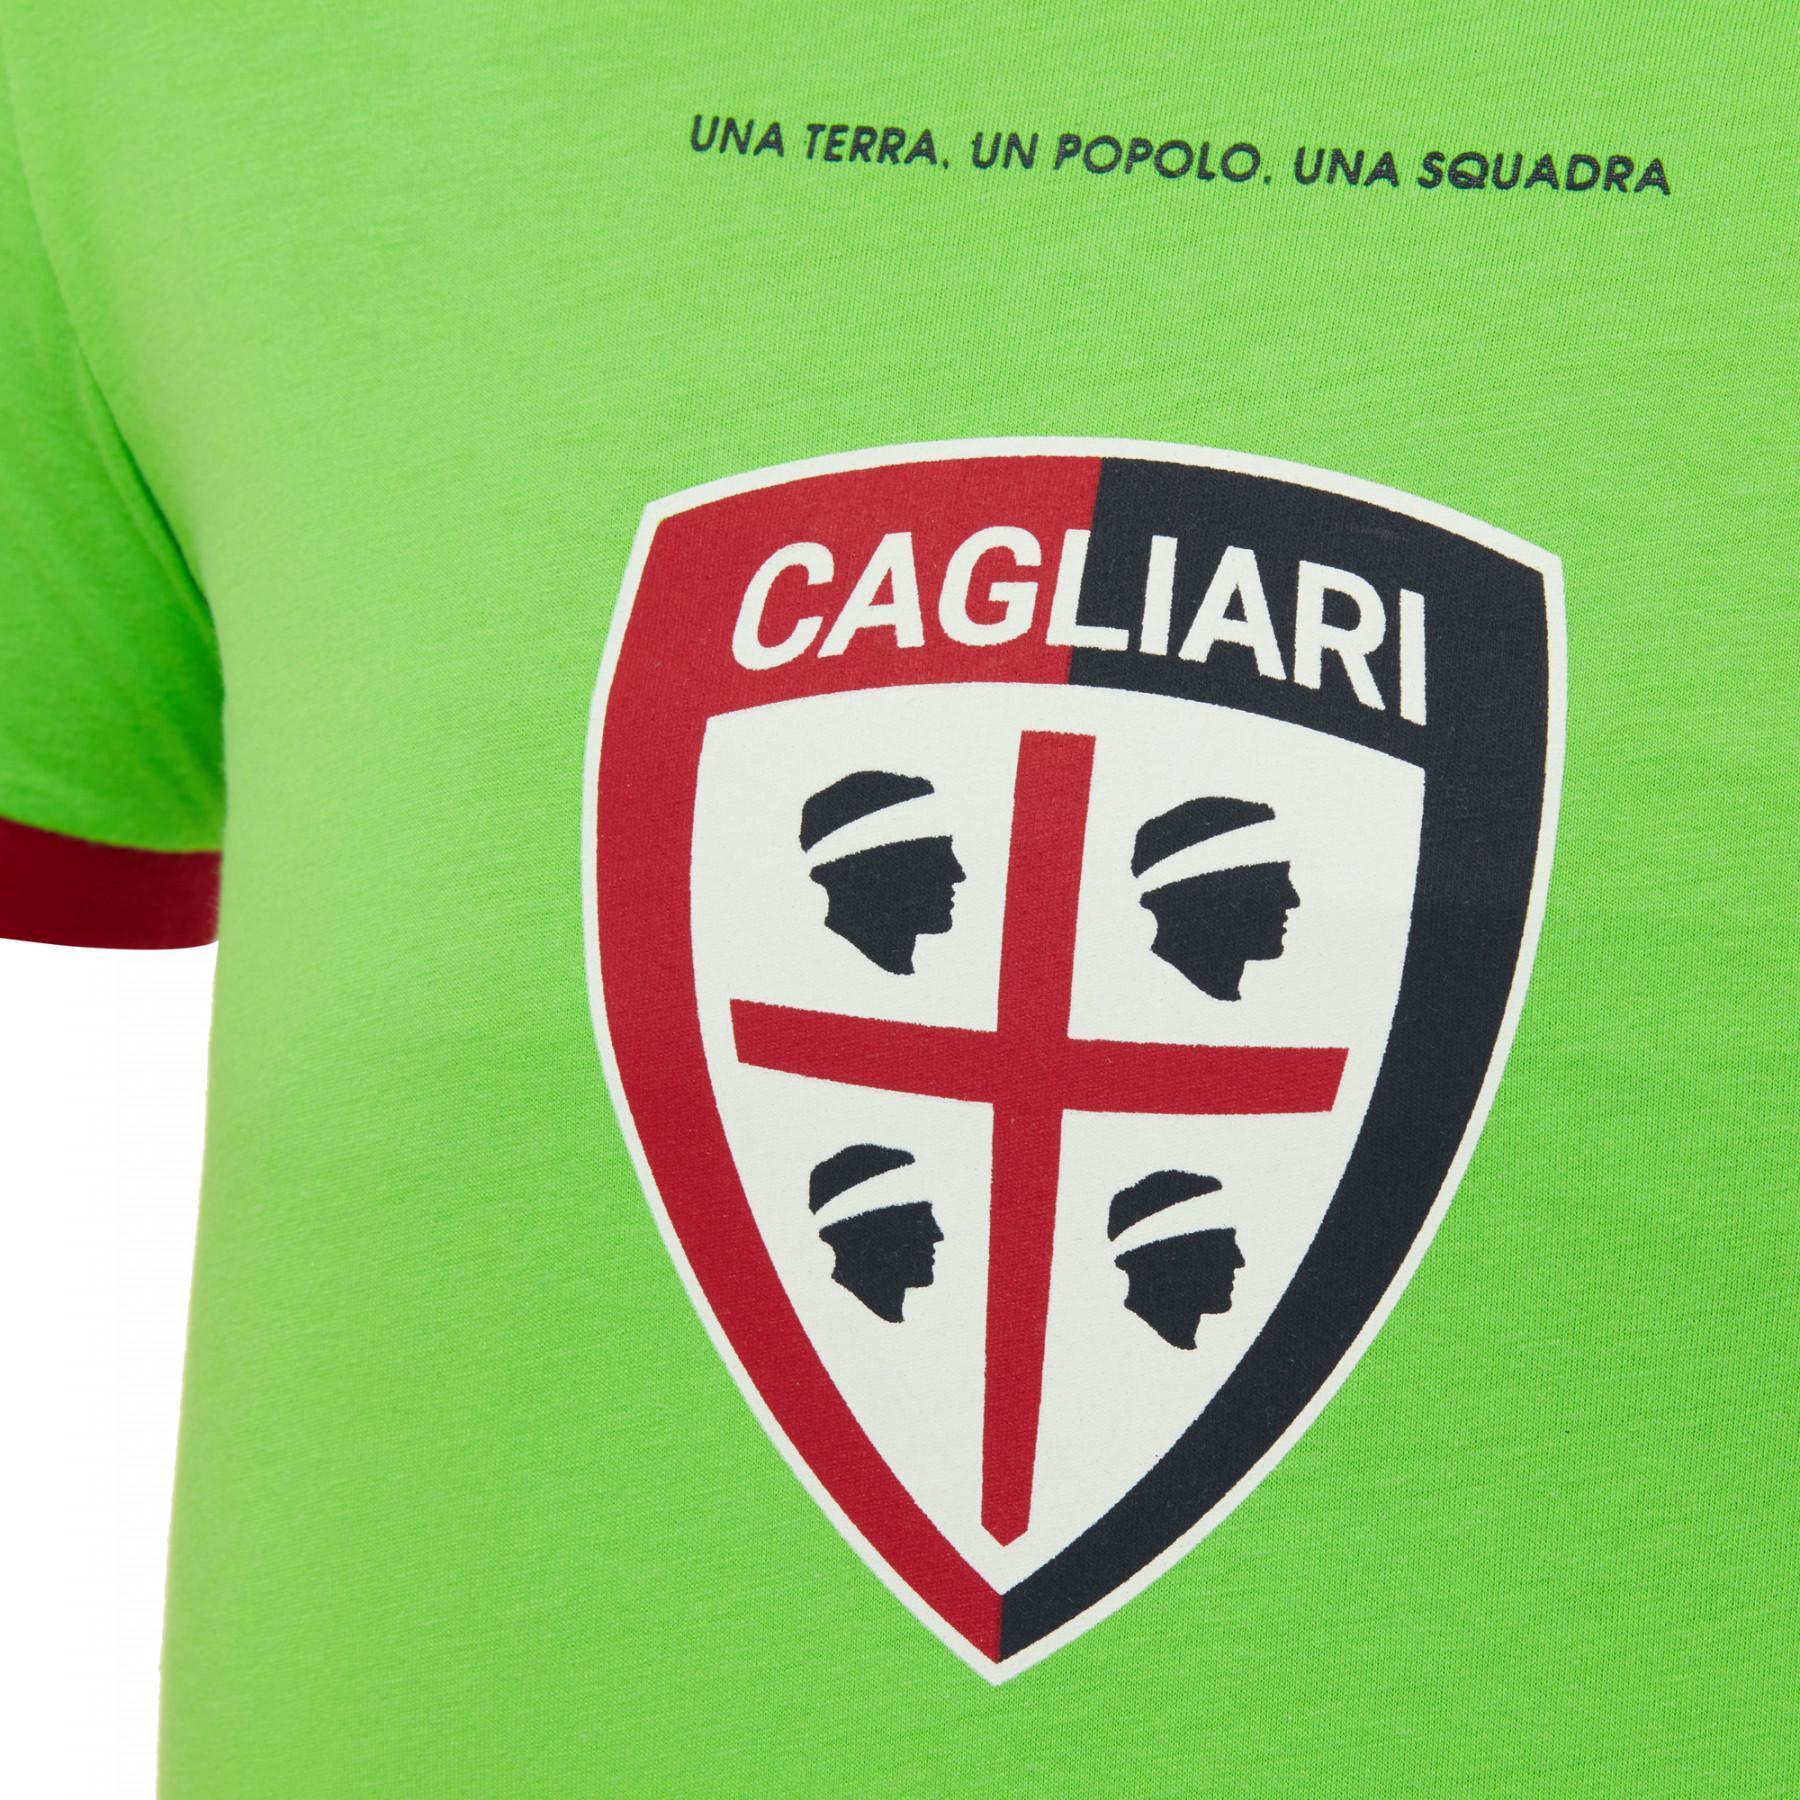 T-shirt extérieur enfant Cagliari 2016-2017